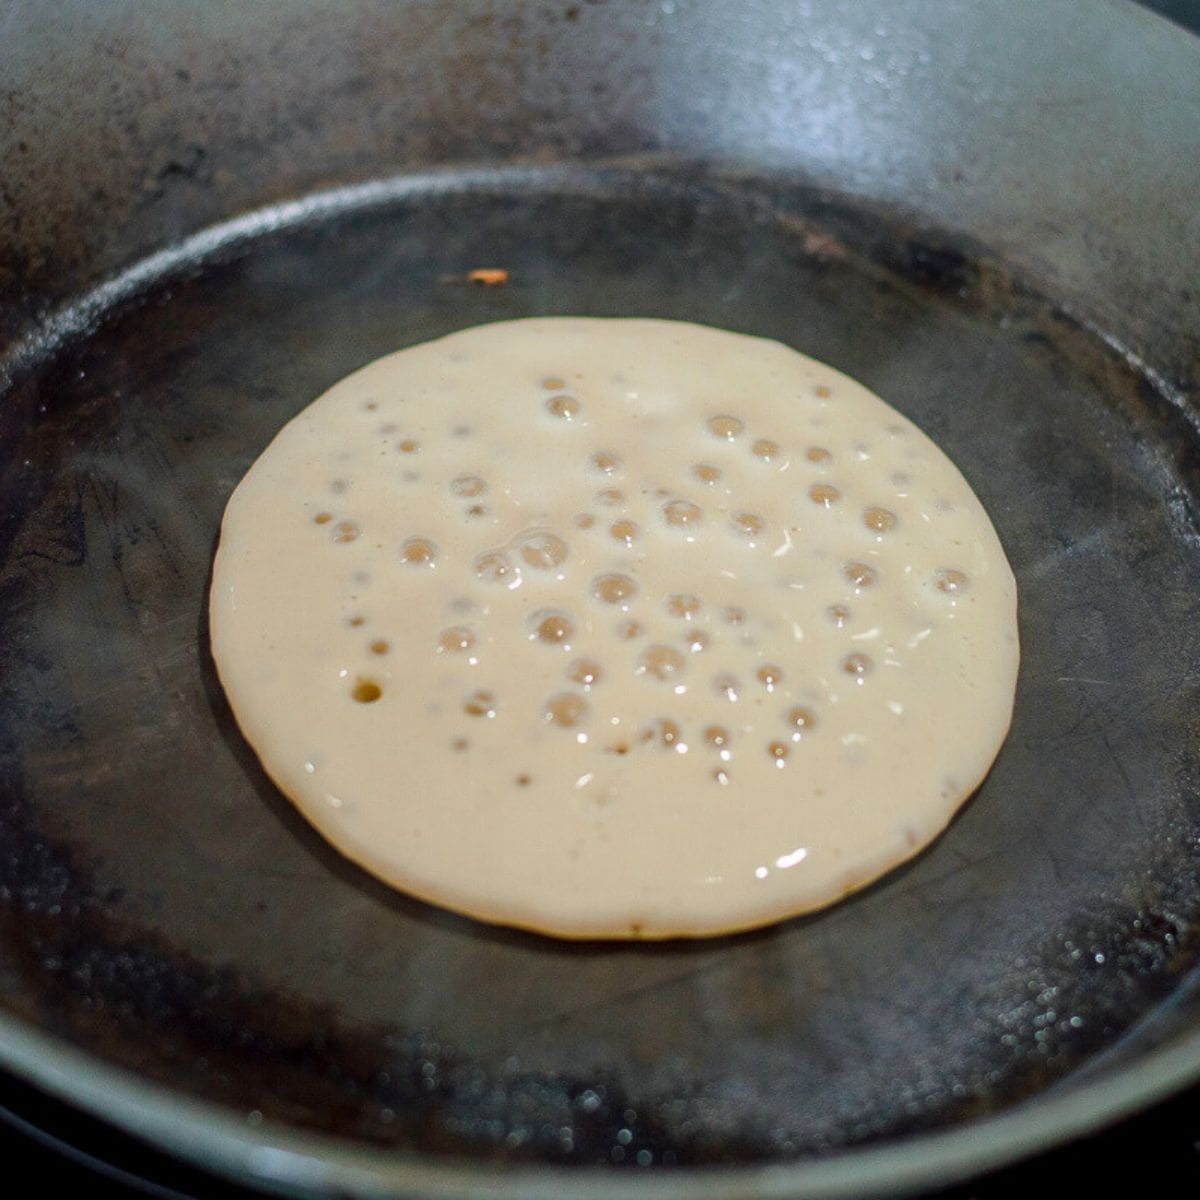 Raw pancake in a frying pan.